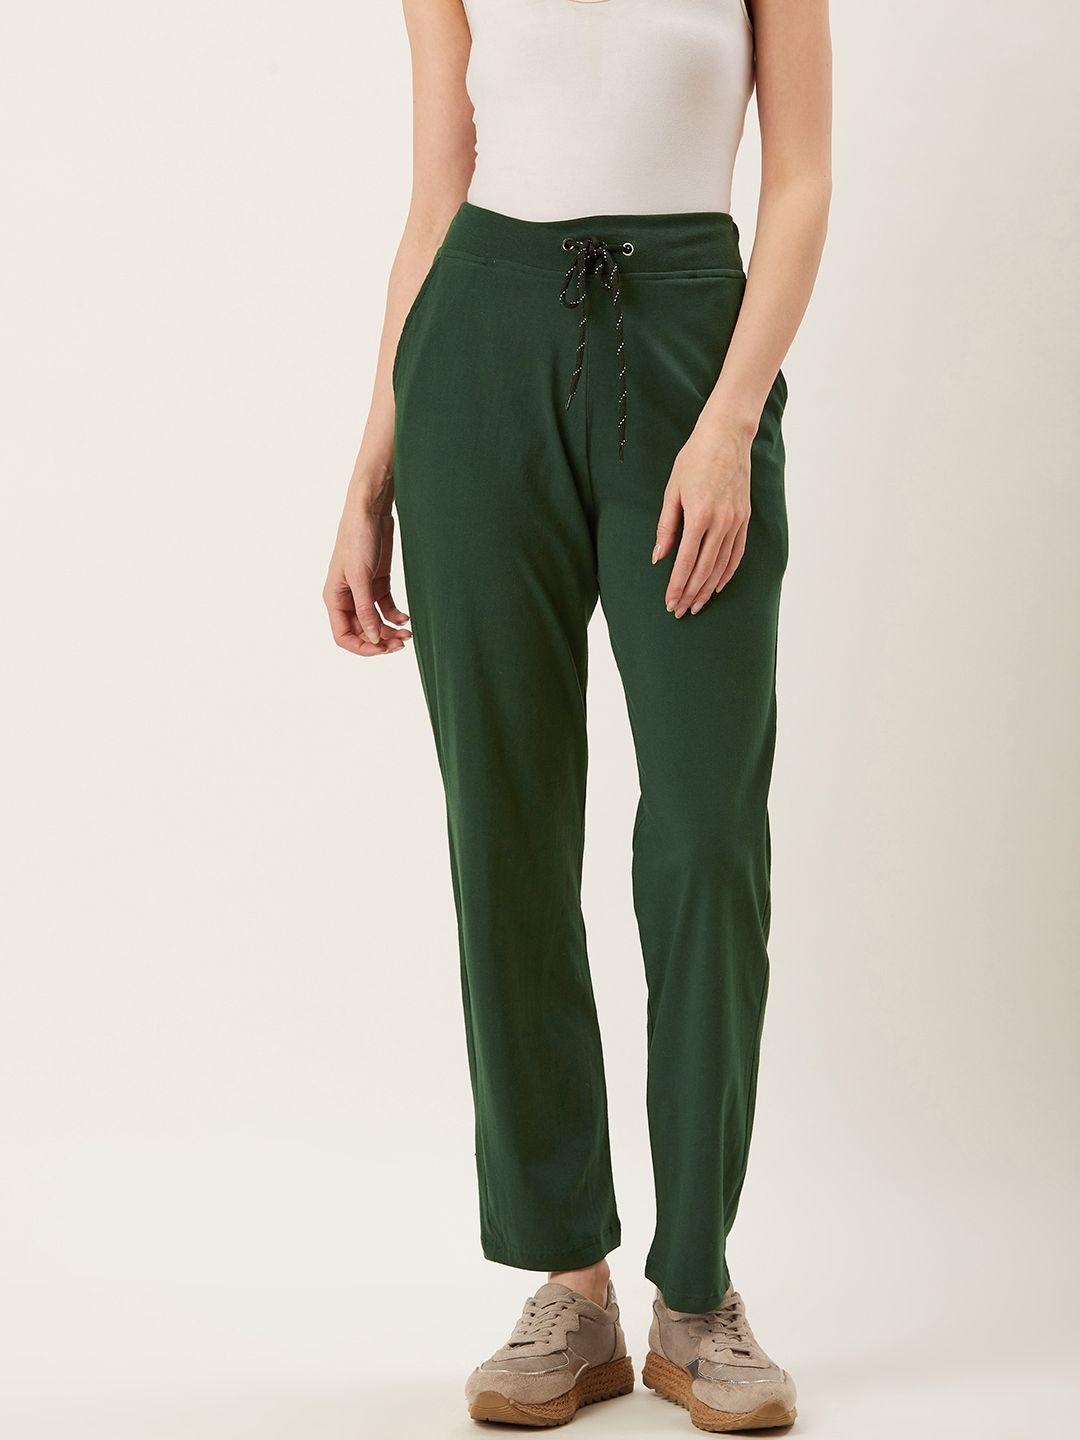 alsace lorraine paris women green solid track pants